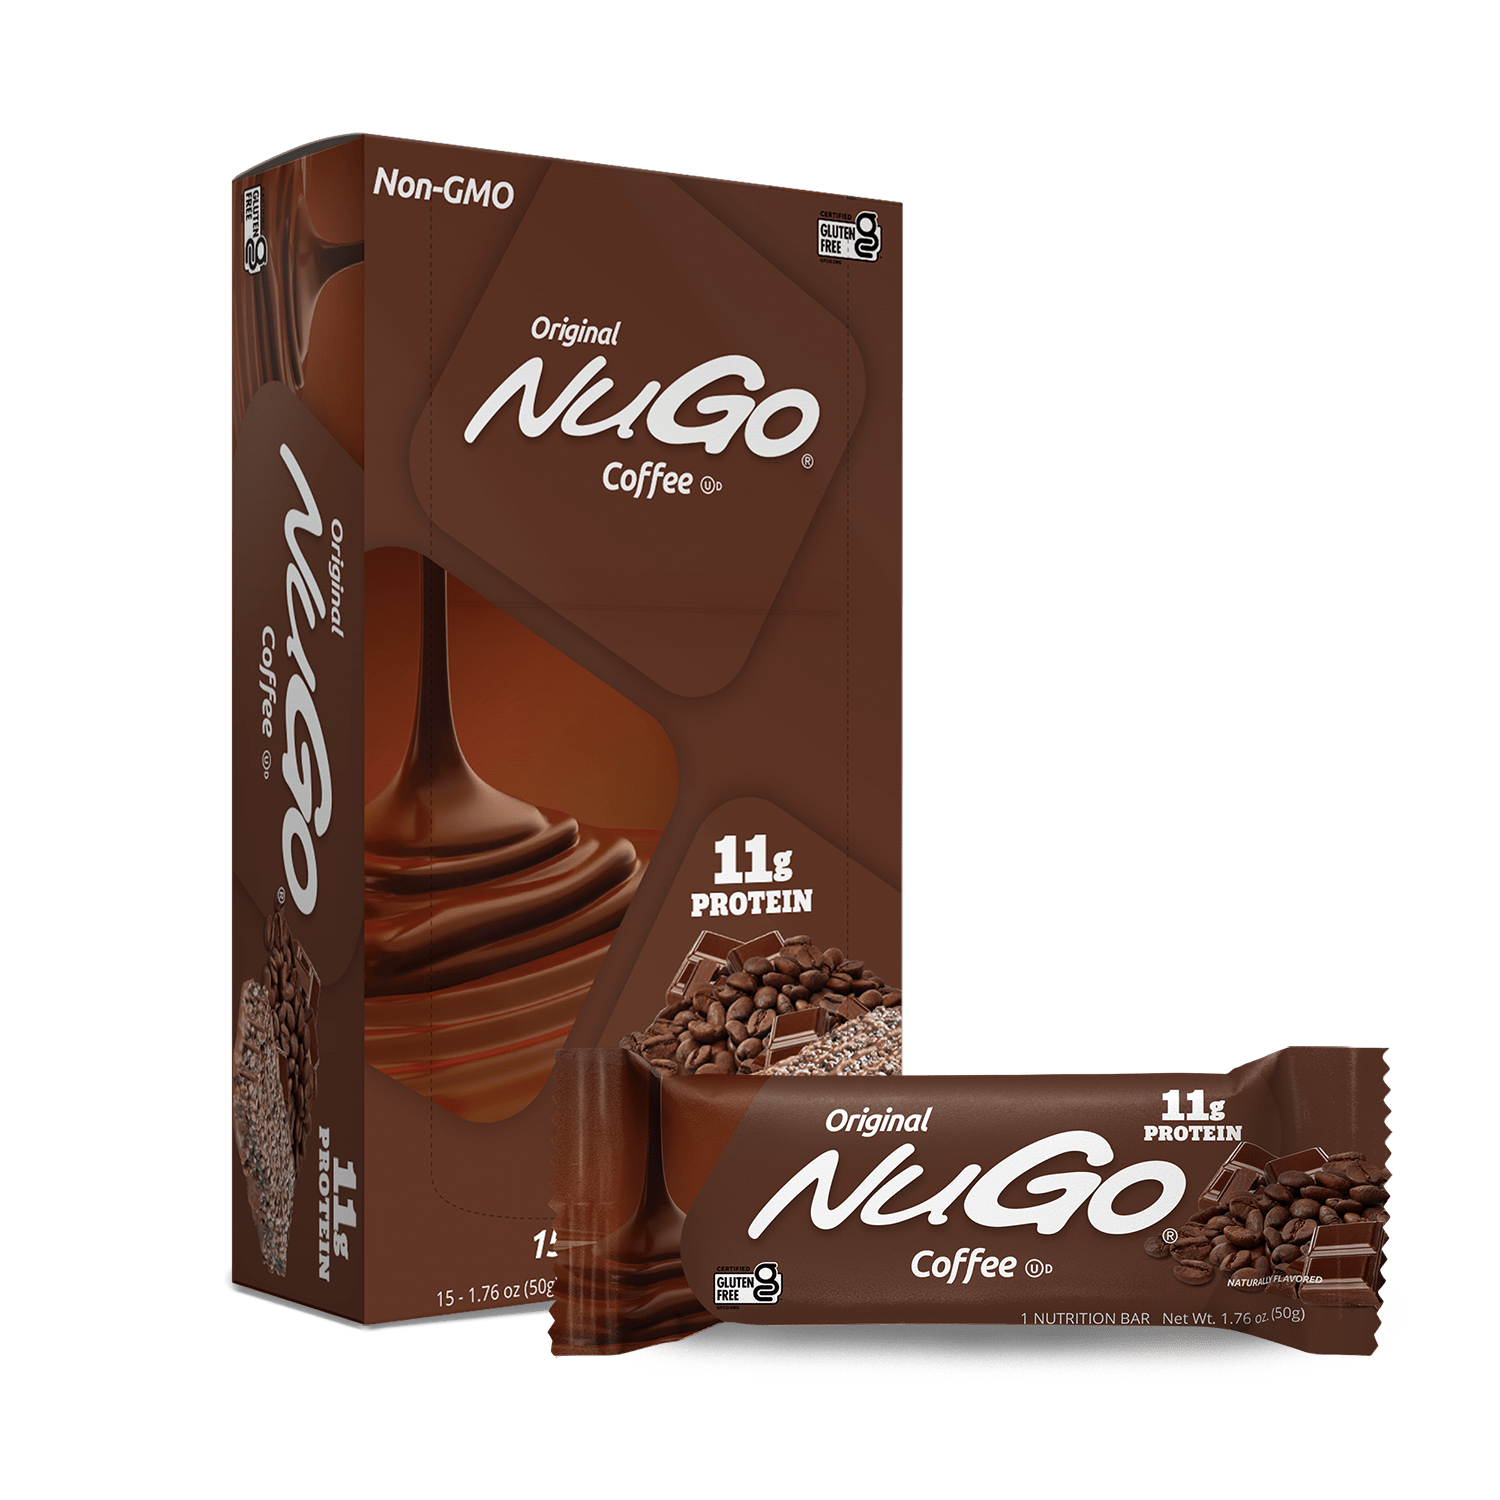 NuGo Original Coffee Bar and Box